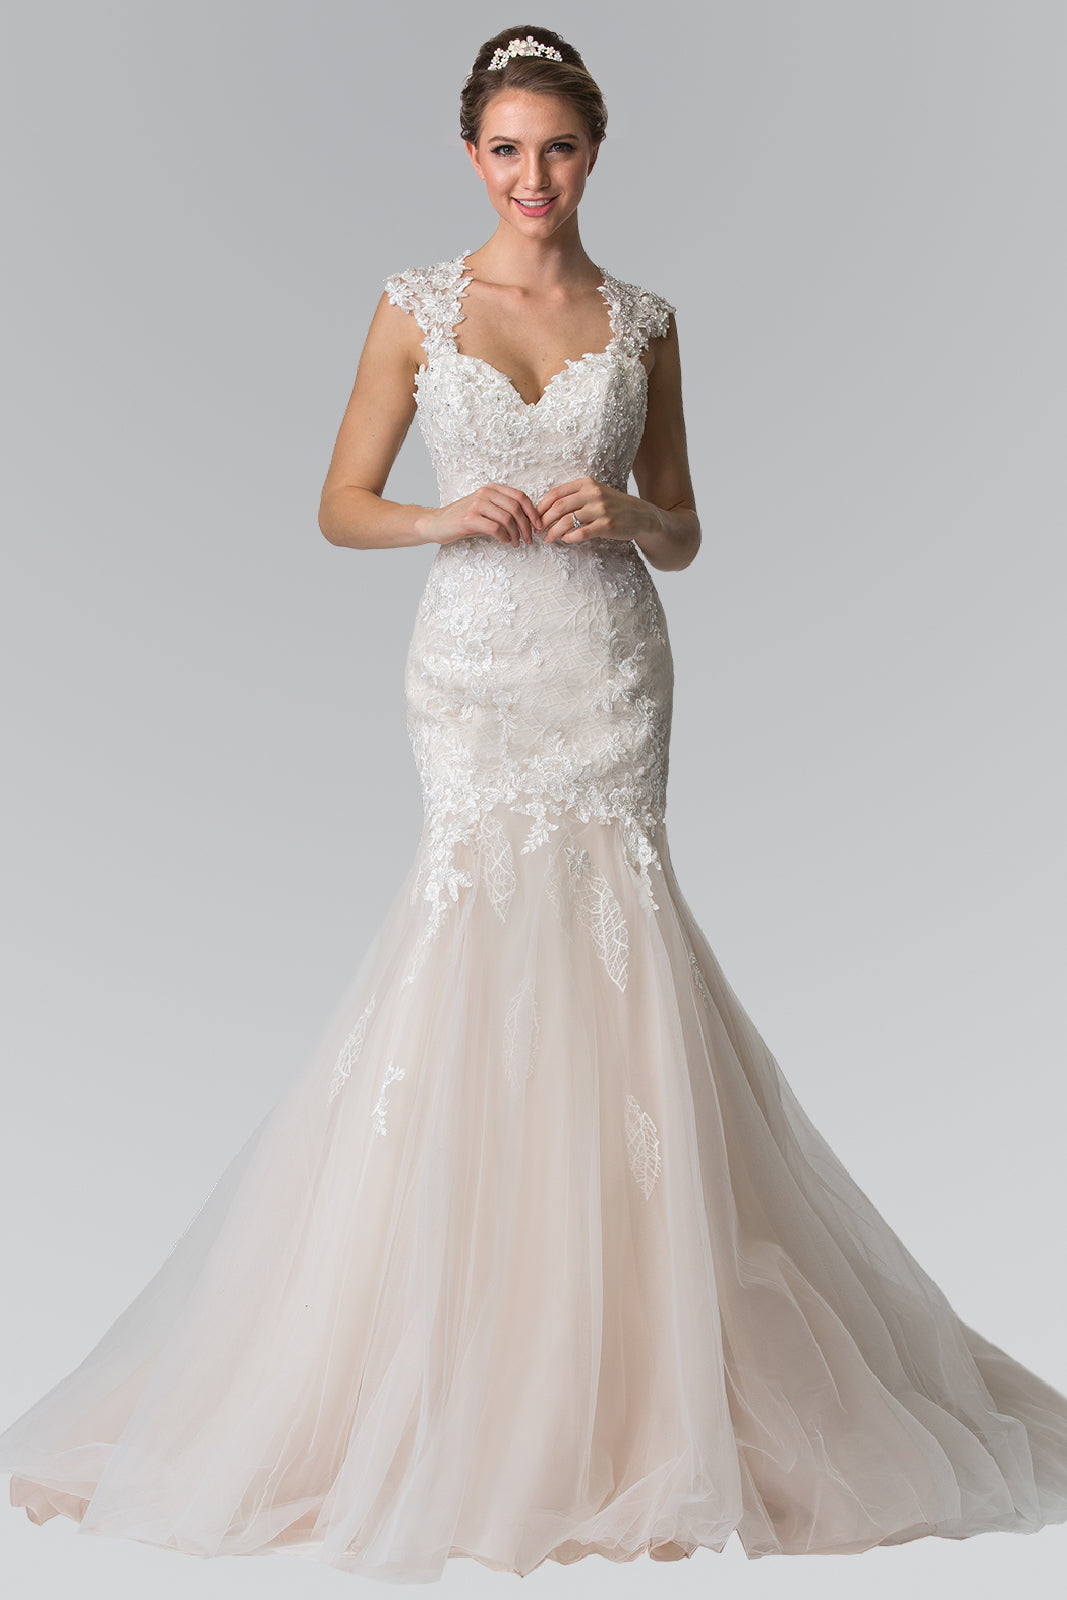 Lace Embellished Mermaid Style Wedding Dress GLGL2367-WEDDING GOWNS-smcfashion.com